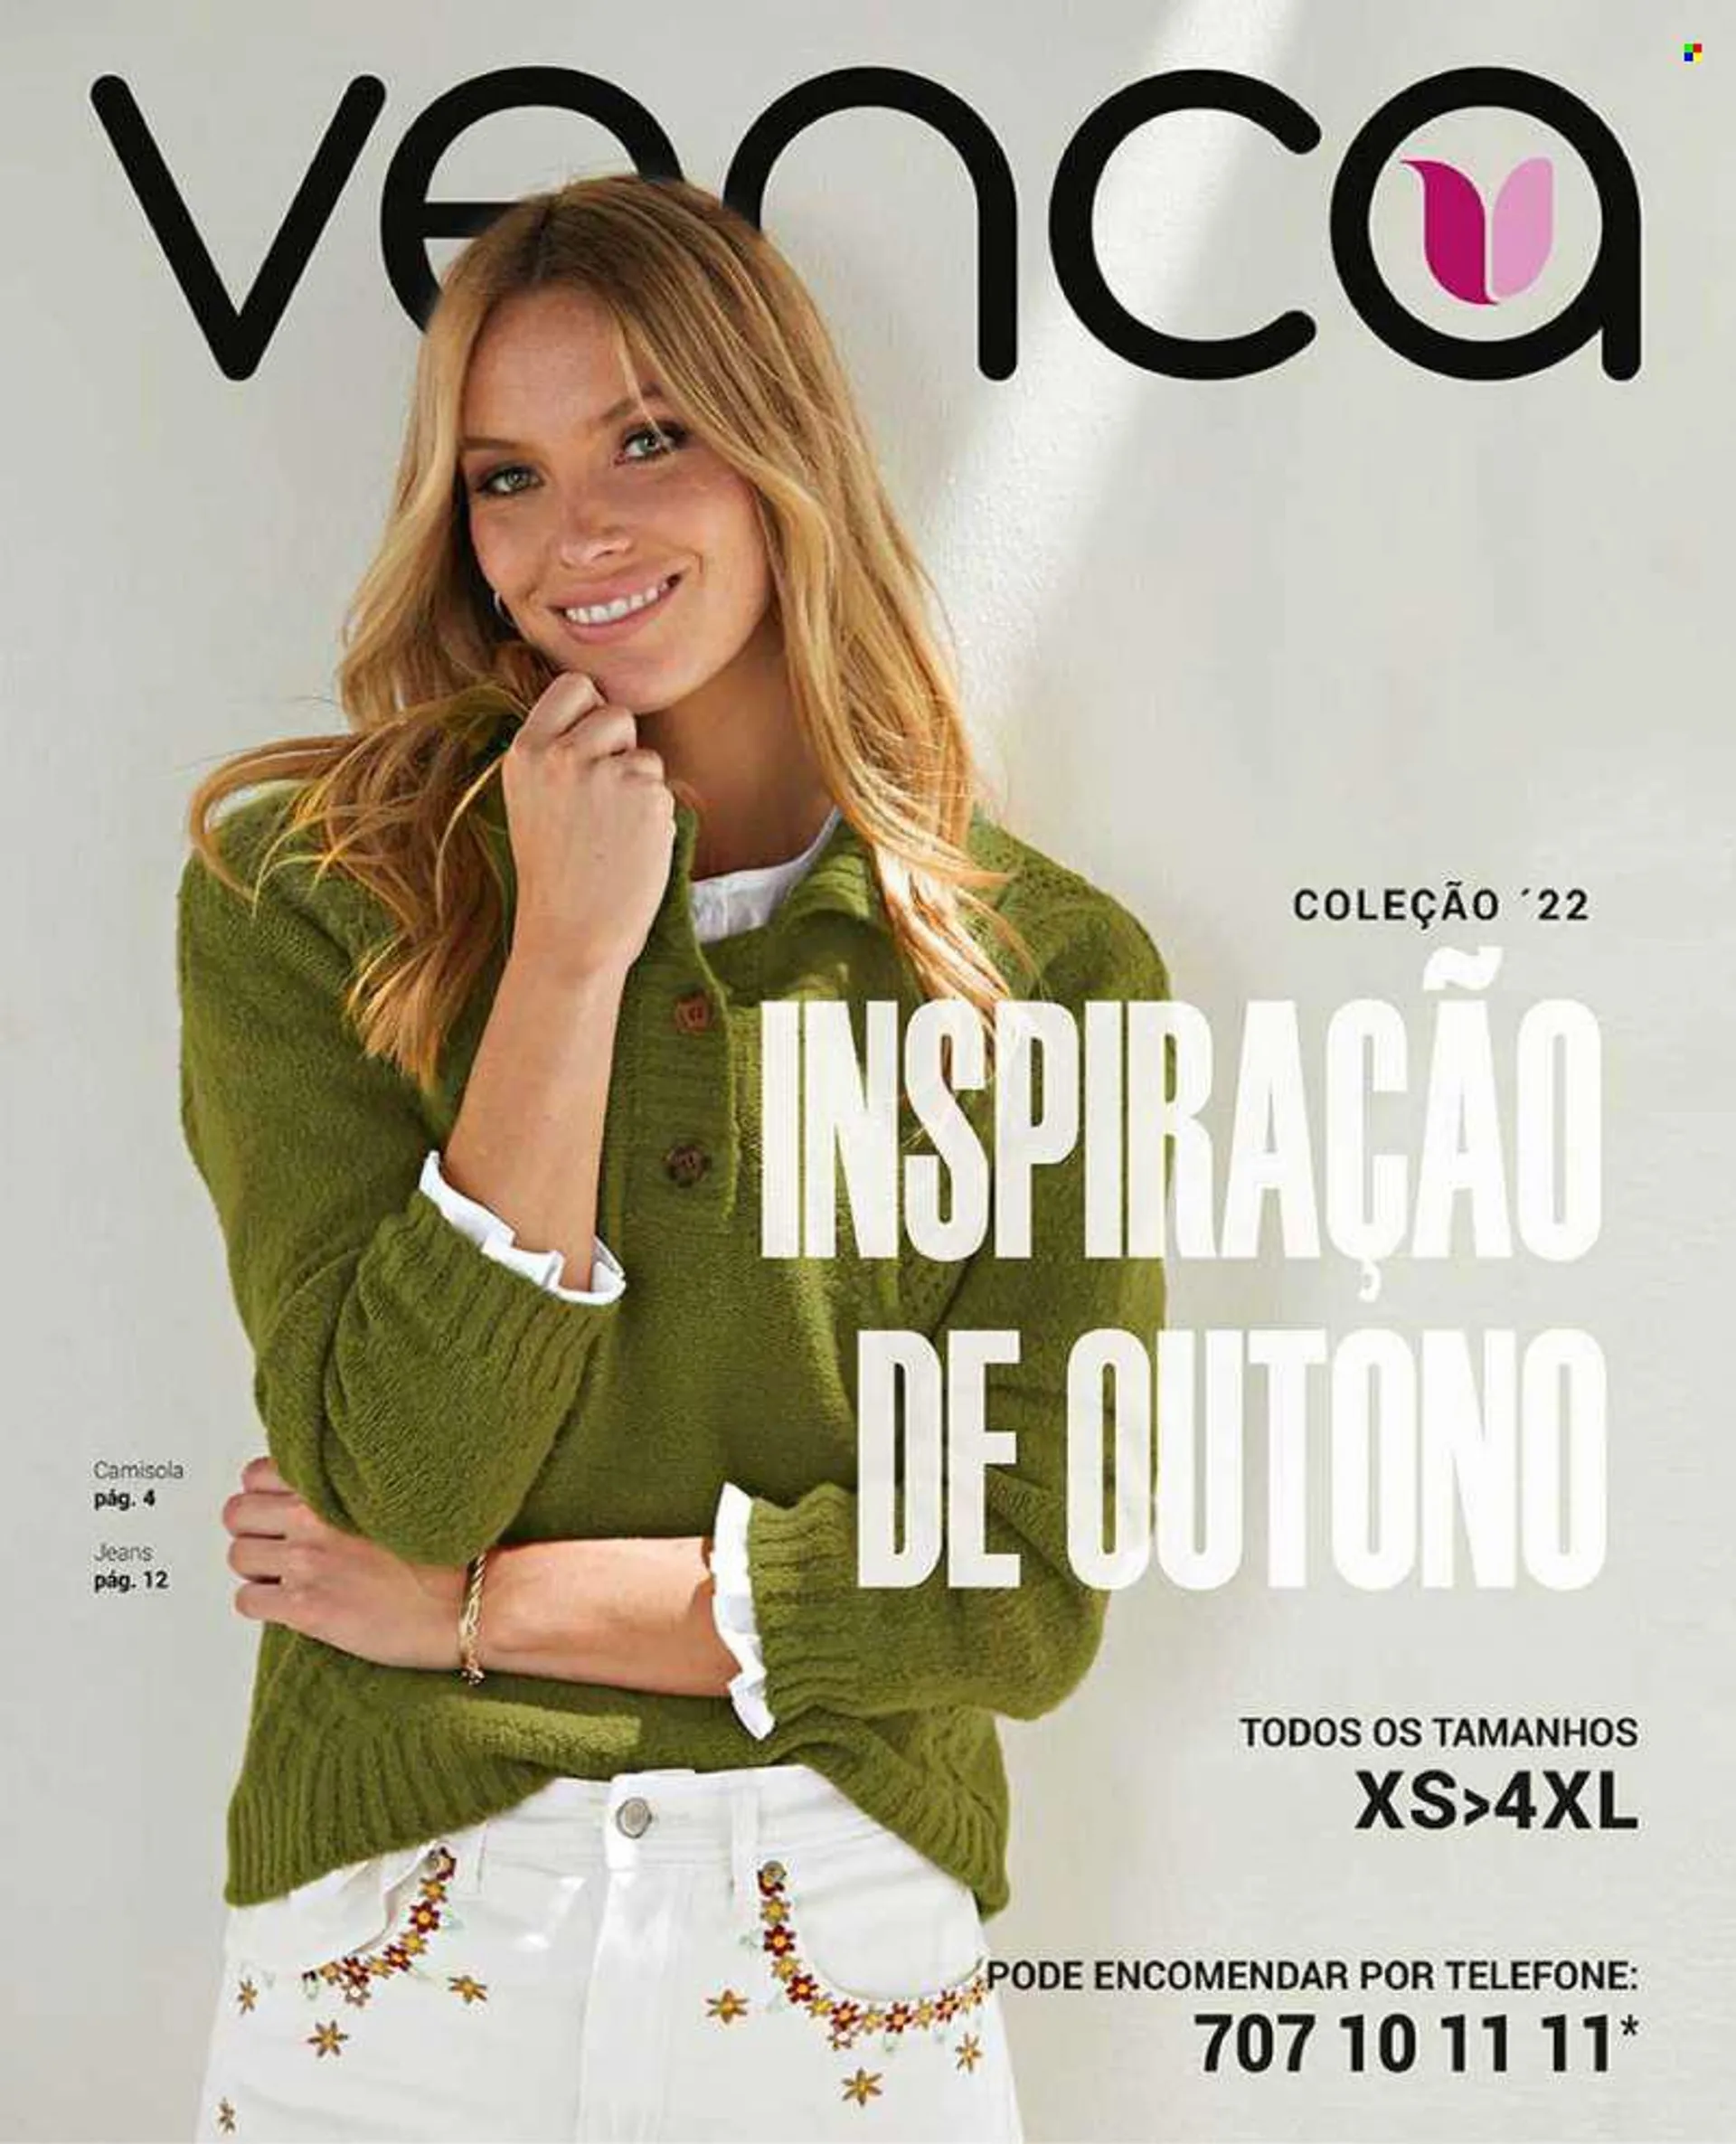 Folheto Venca - Produtos em promoção - jeans, camisola. Página 1.